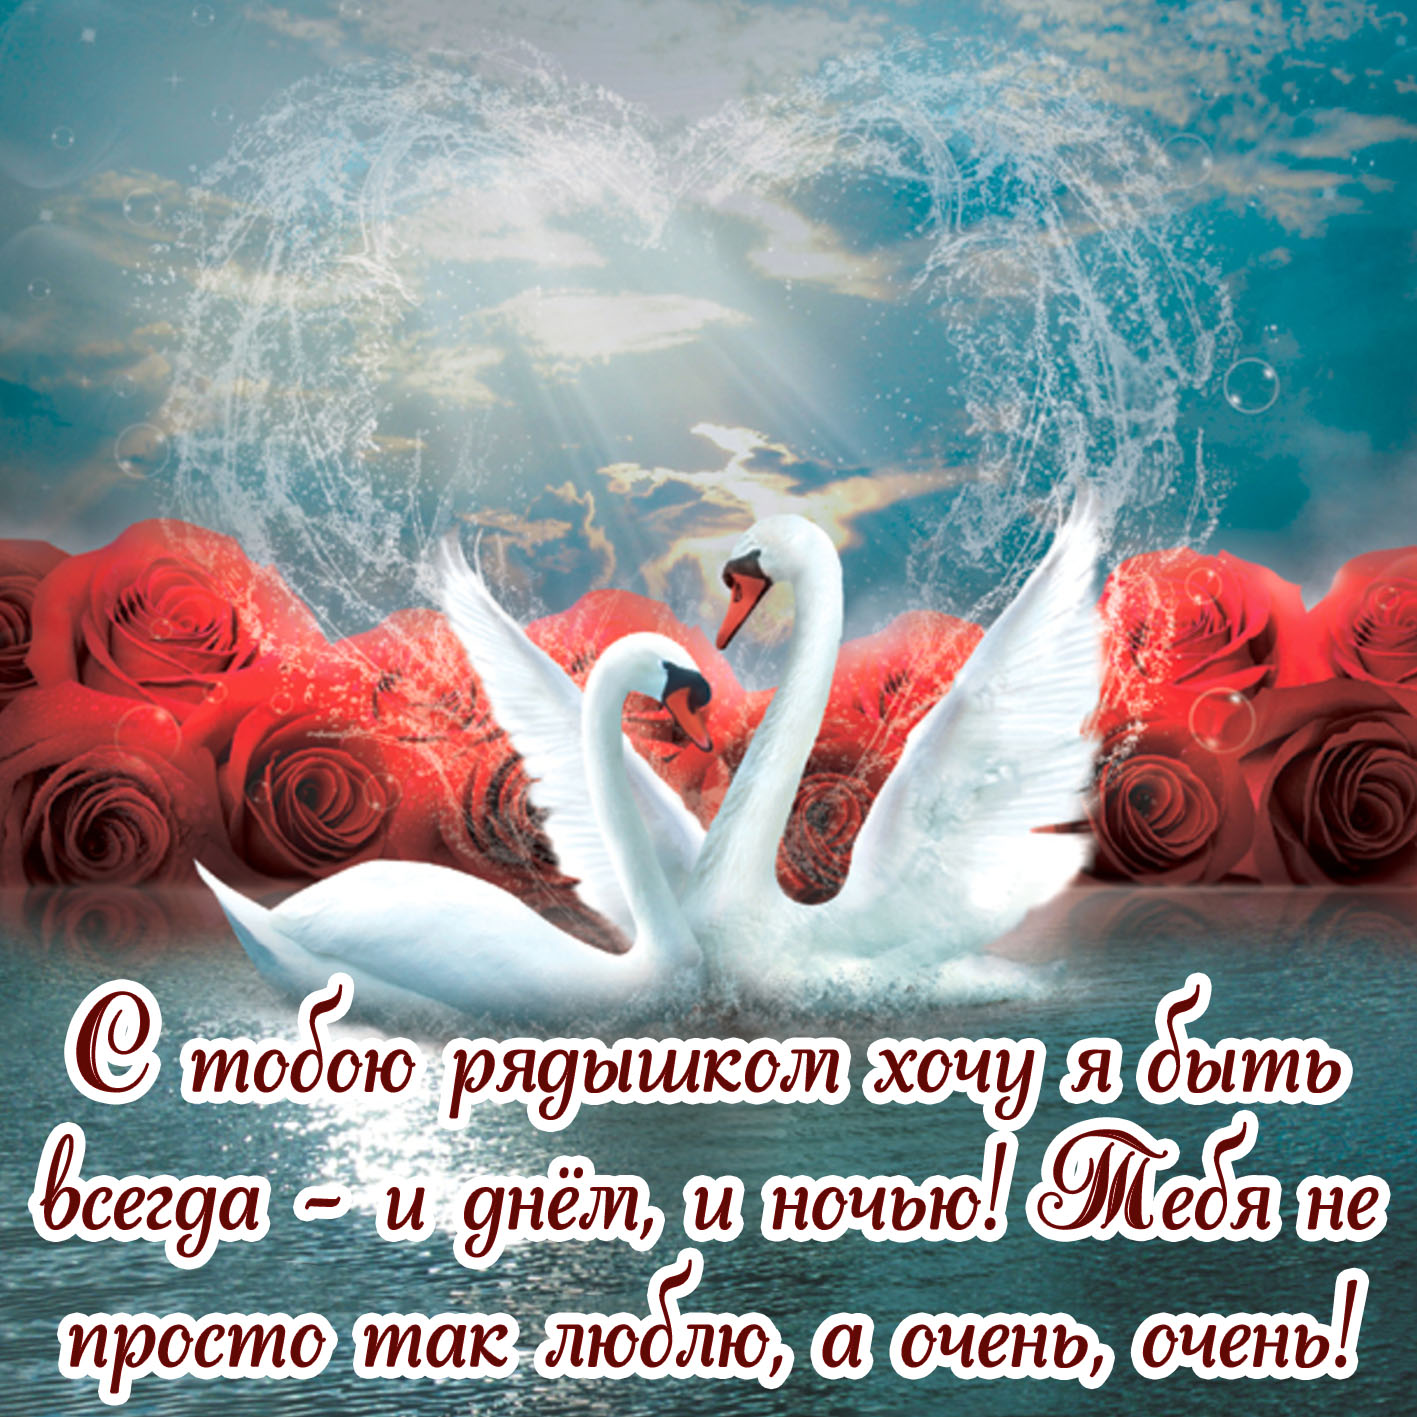 Картинка люблю с лебедями на фоне красных роз